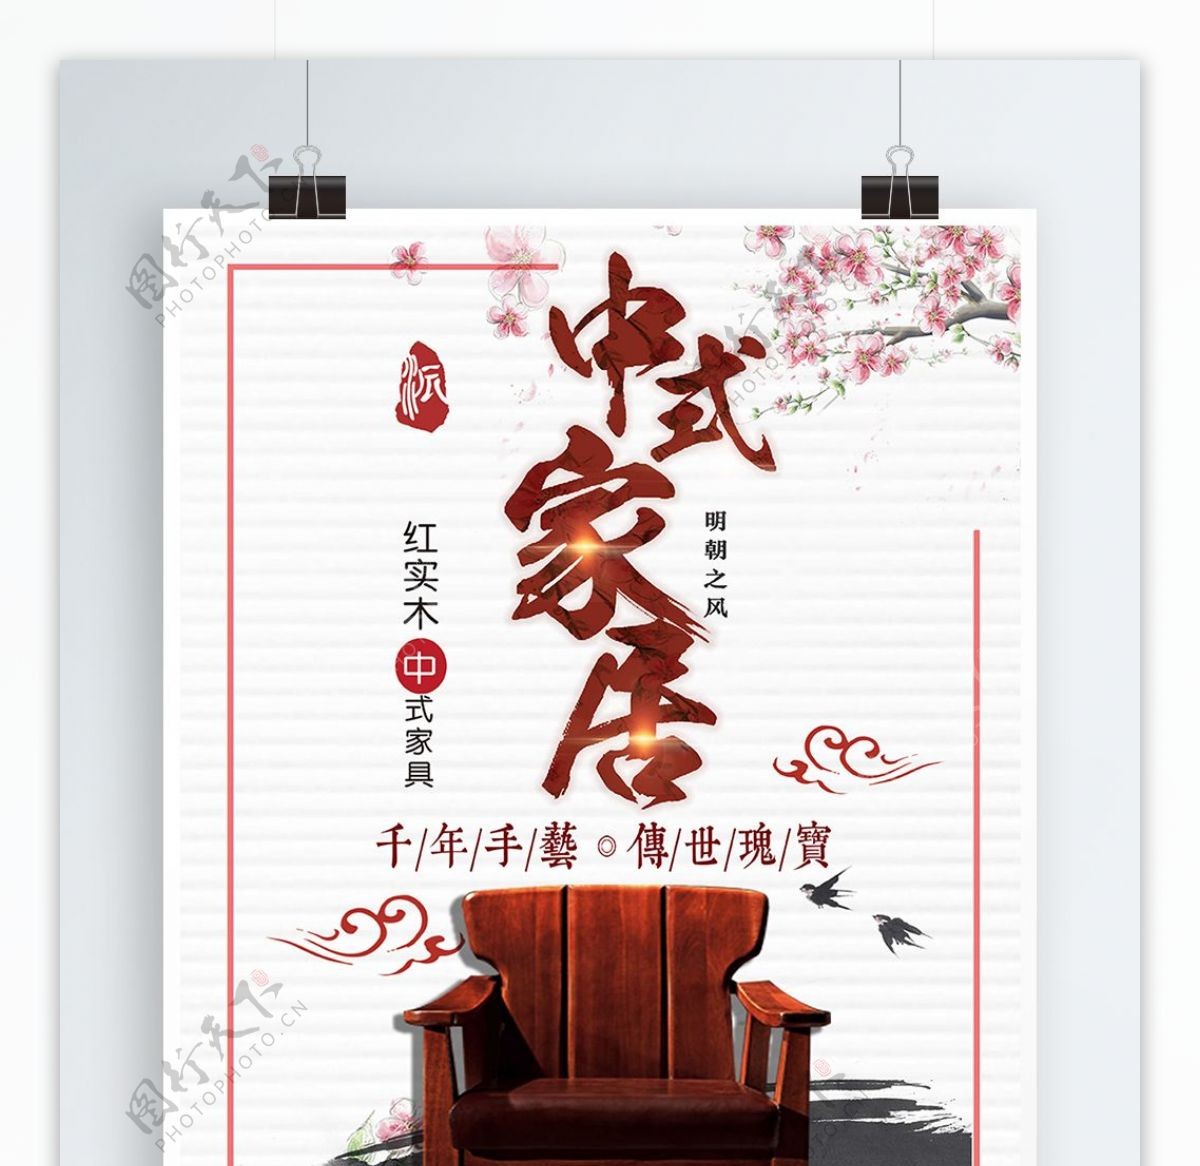 白色背景简约中国风中式家具宣传海报